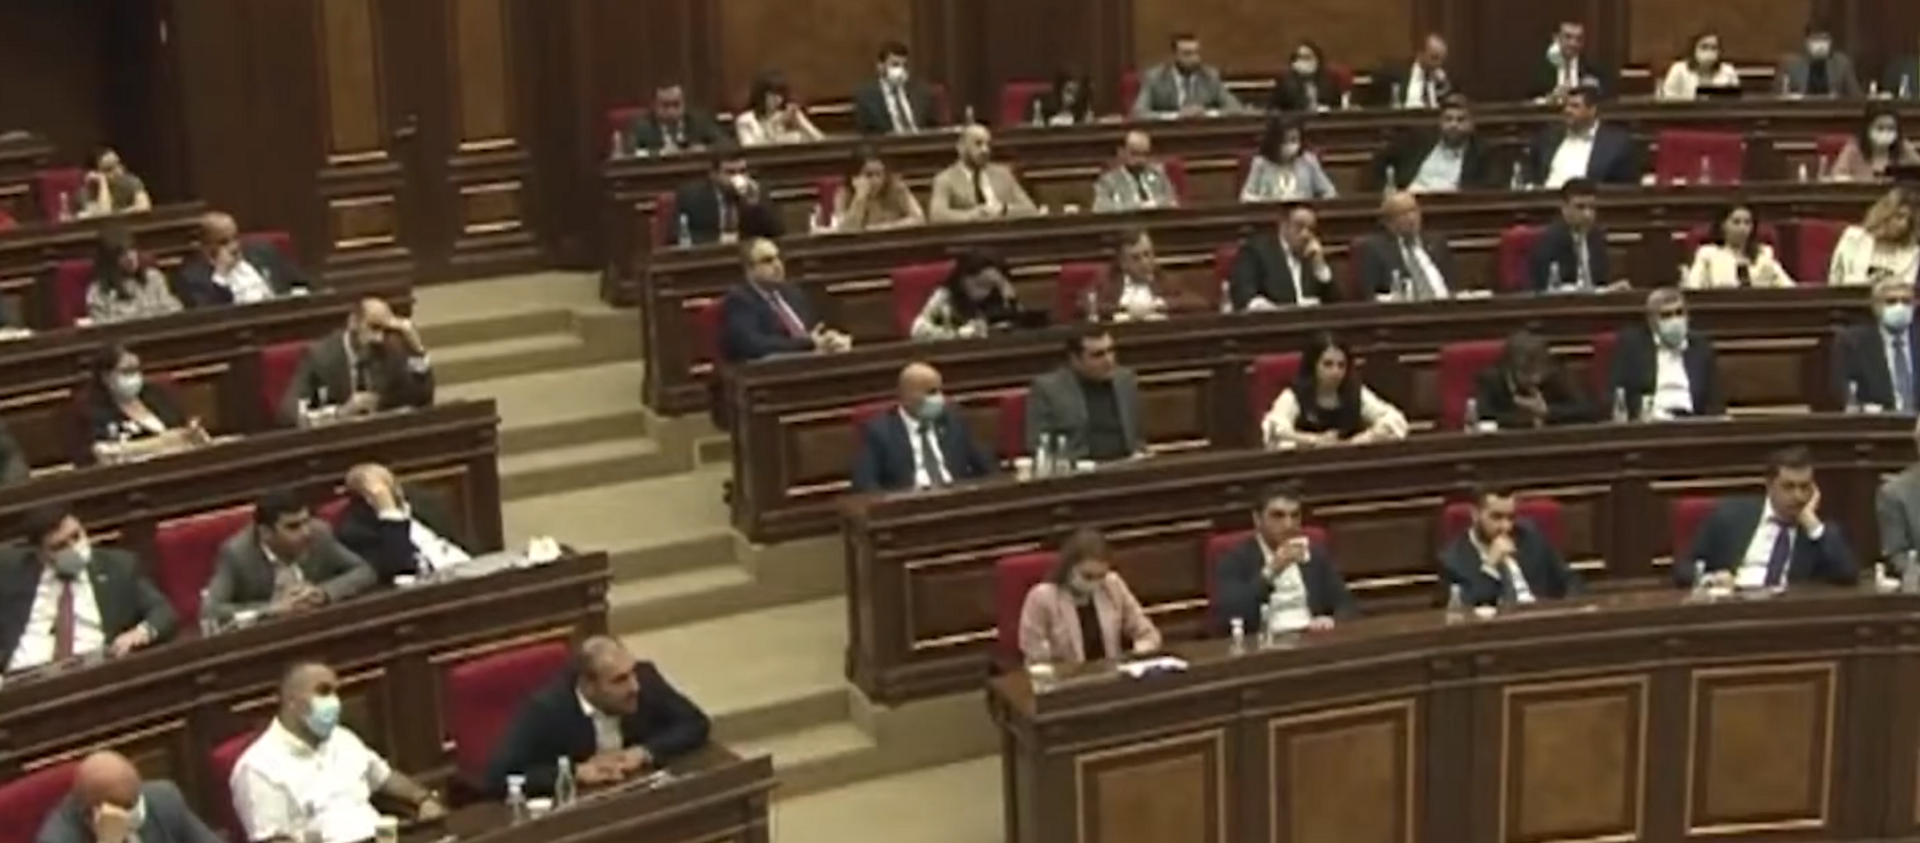 Выборы в Армении 2021: процесс роспуска парламента запущен - Sputnik Грузия, 1920, 04.05.2021